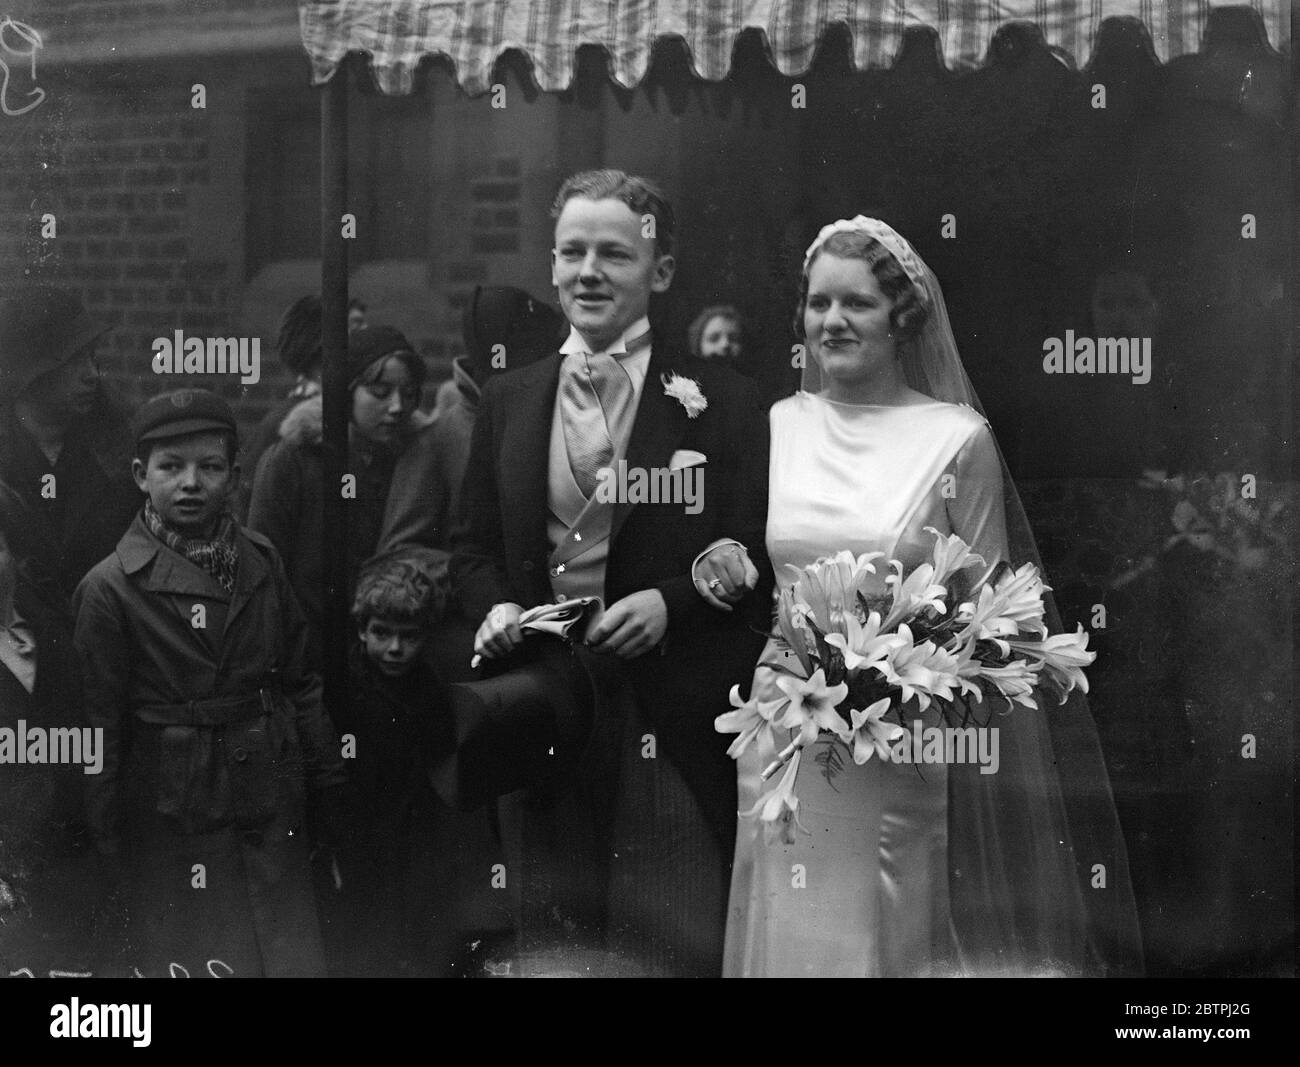 Mariée et marié souriants. M. H MILMO (plus tard Sir Helenus Patrick Joseph MILMO ) et Mlle J Morley se sont mariés à l'église St Mary's , les jardins de Cadogan , Londres . Photos ; la mariée et le marié souriants . 20 décembre 1933 Banque D'Images